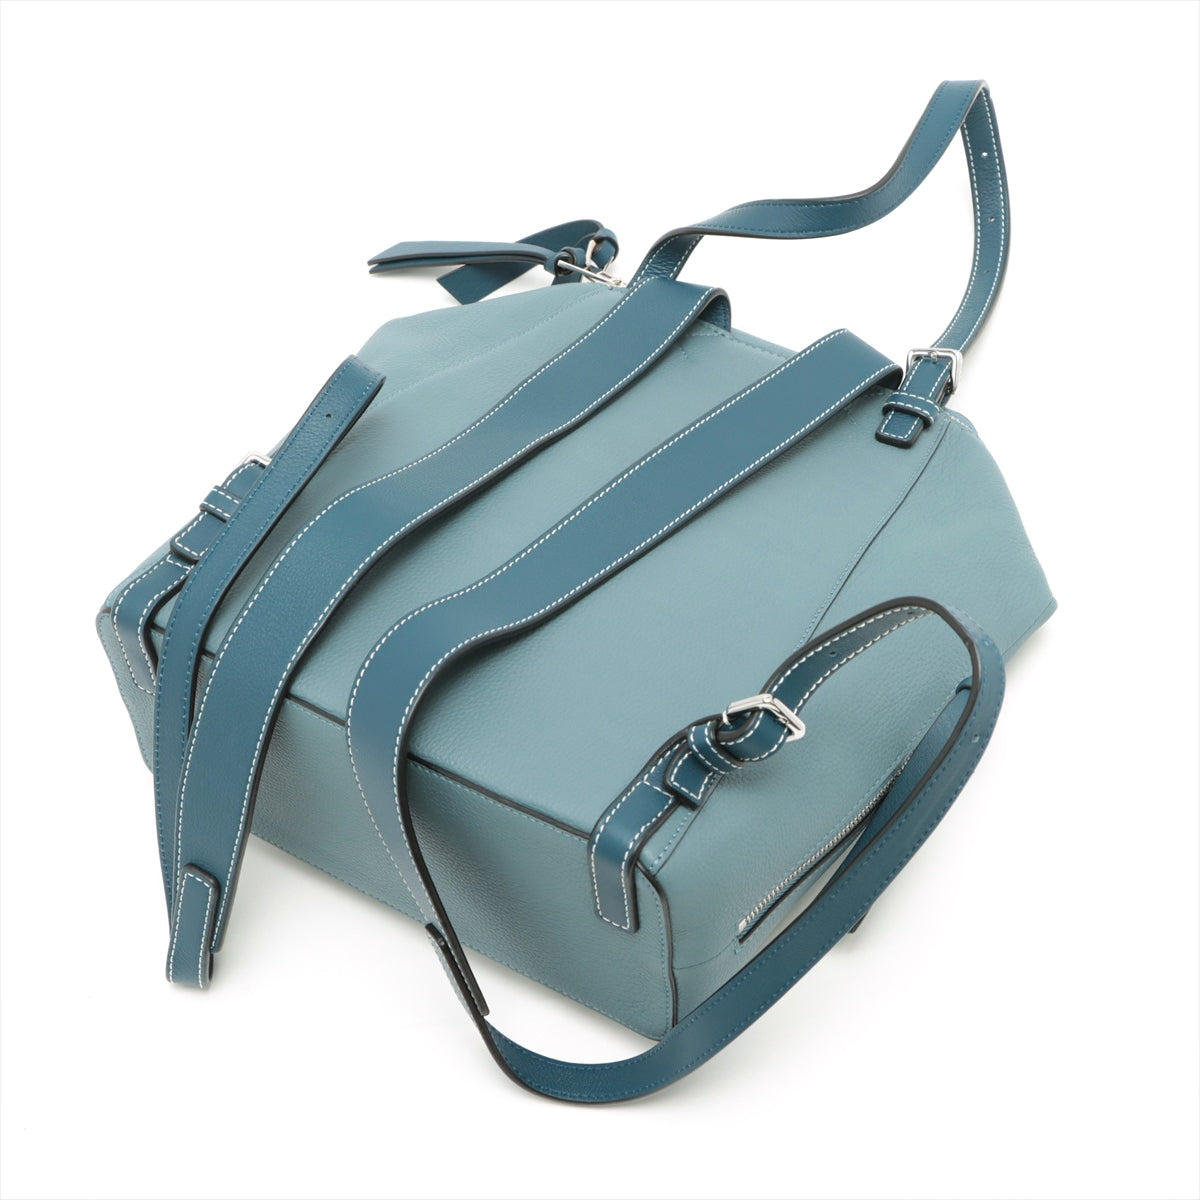 Loewe x Disney Goya Leather Backpack Blue